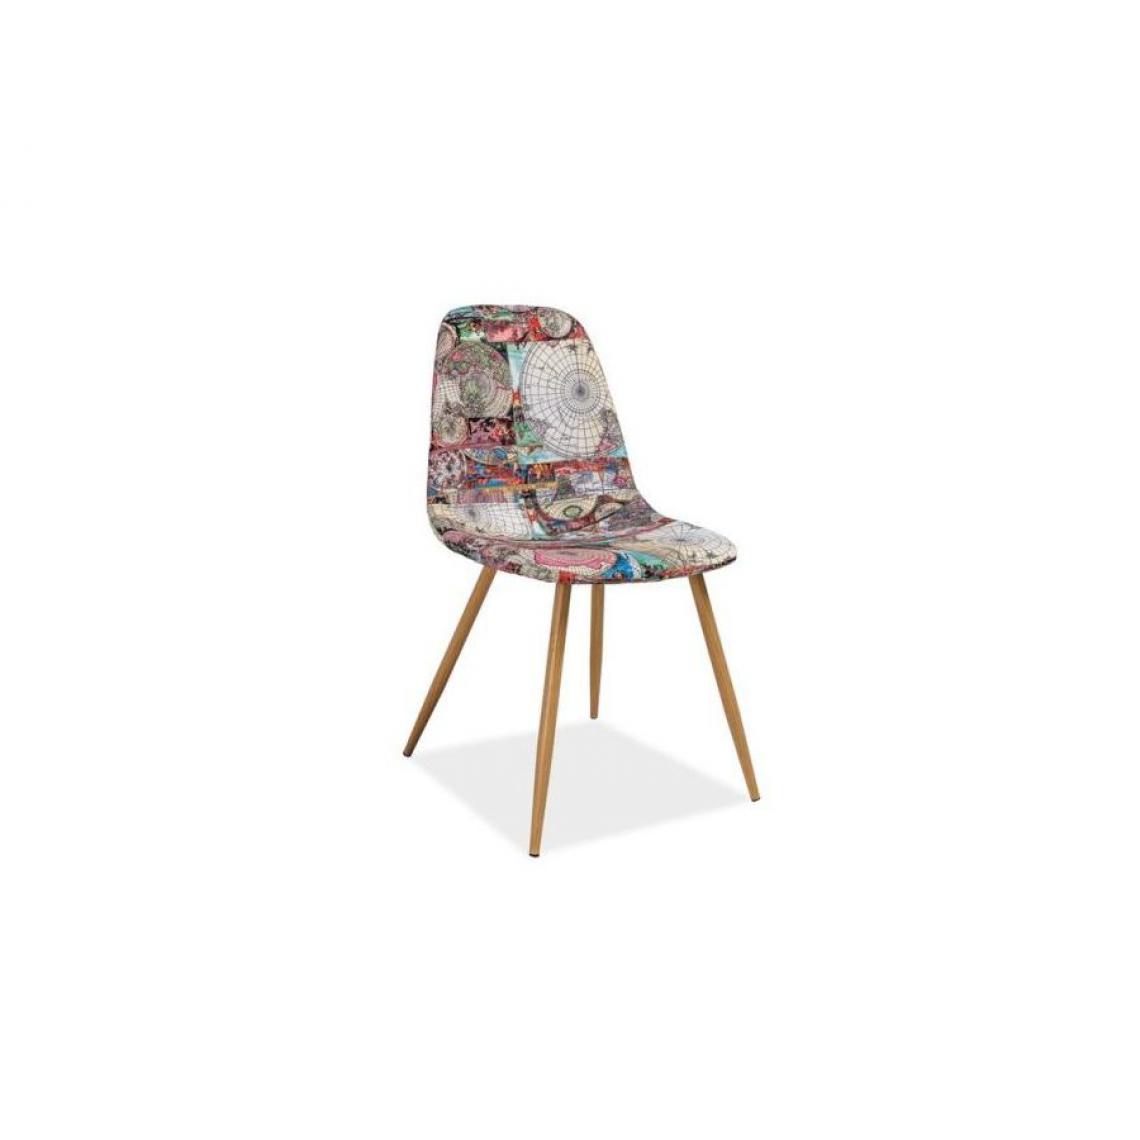 Hucoco - NURIA | Chaise moderne matelassé salon bureau salle à manger | 84x44x38 cm | Rembourrage en tissu avec motif | Pieds en métal - Multicouleur - Chaises